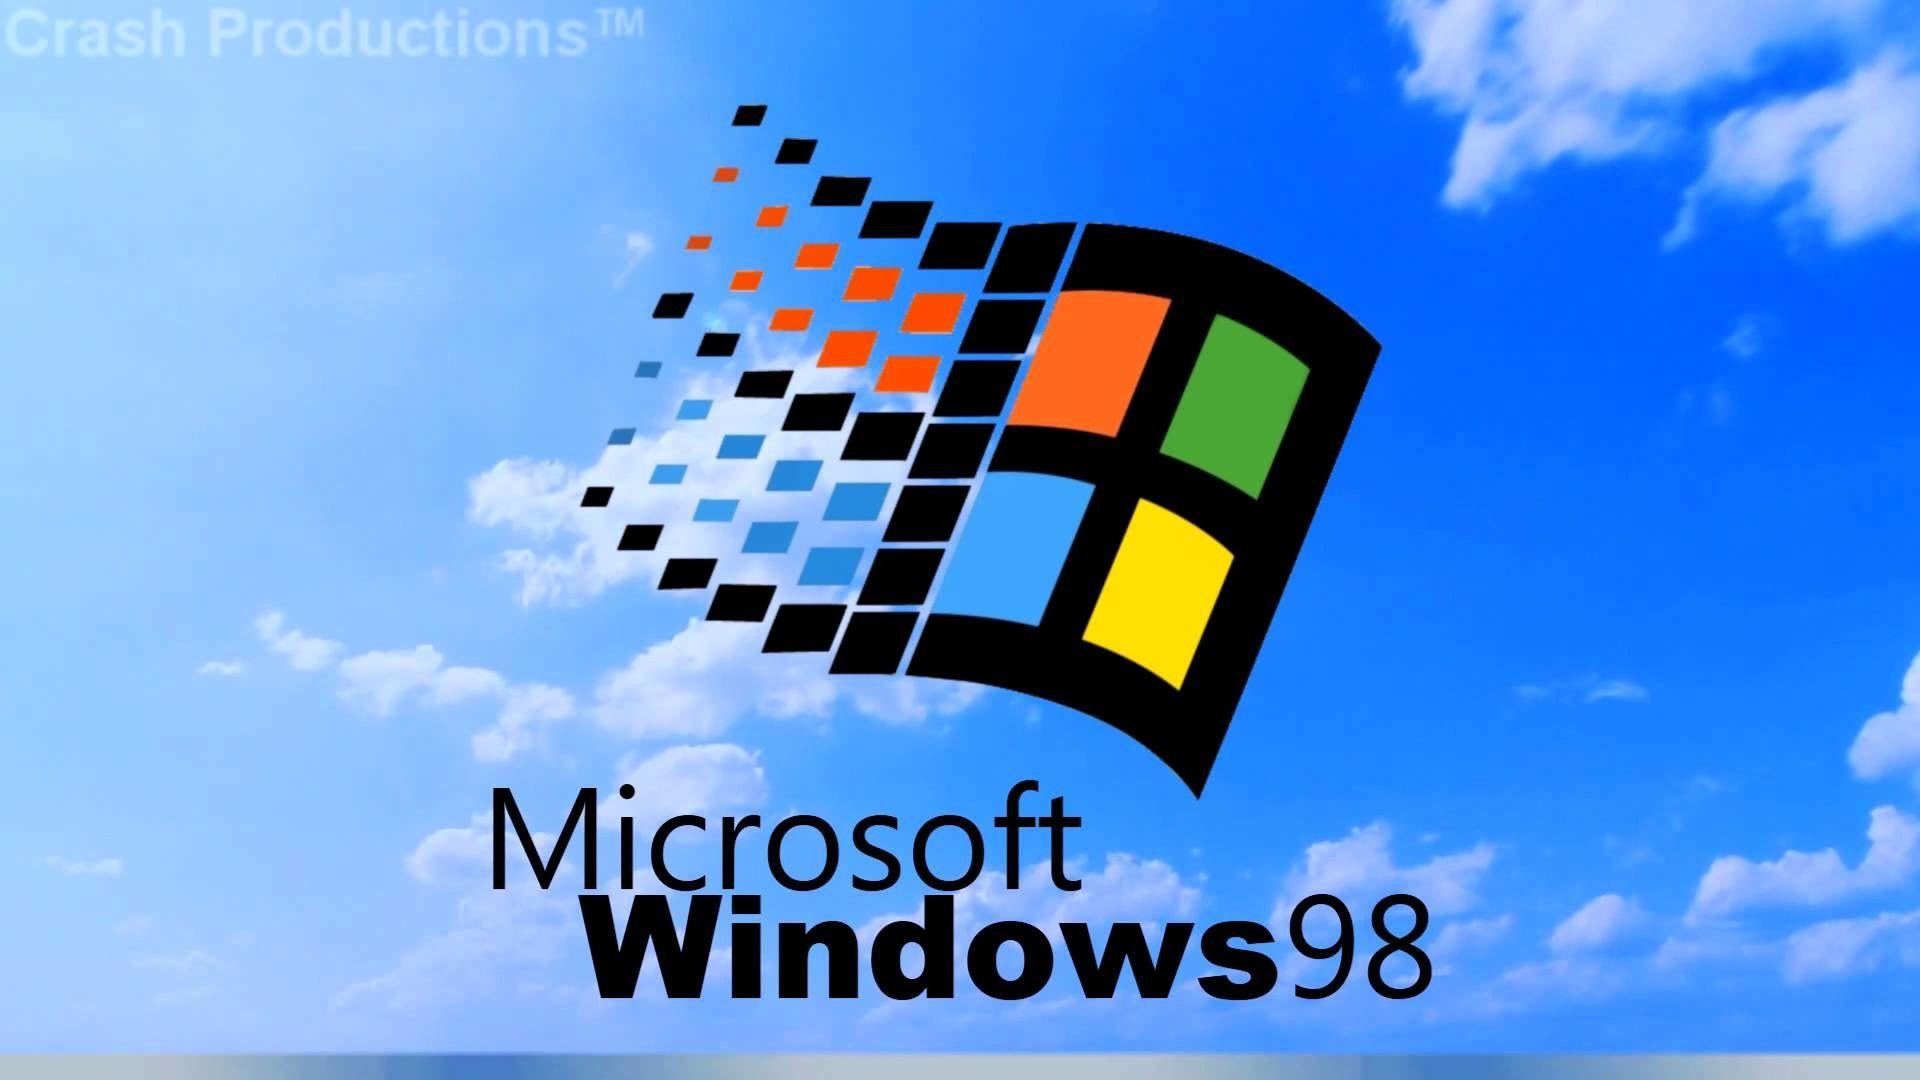 Hãy biến màn hình của bạn thành một phiên bản Windows 98 cổ điển với bộ sưu tập hình nền độc đáo. Phần mềm huyền thoại này đã có mặt trên các máy tính của chúng ta rất lâu đời, và giờ đây bạn cũng có thể sử dụng hình ảnh kinh điển này làm hình nền của mình. Khám phá nguồn cảm hứng mới với bộ sưu tập đa dạng của Windows 98 wallpapers.